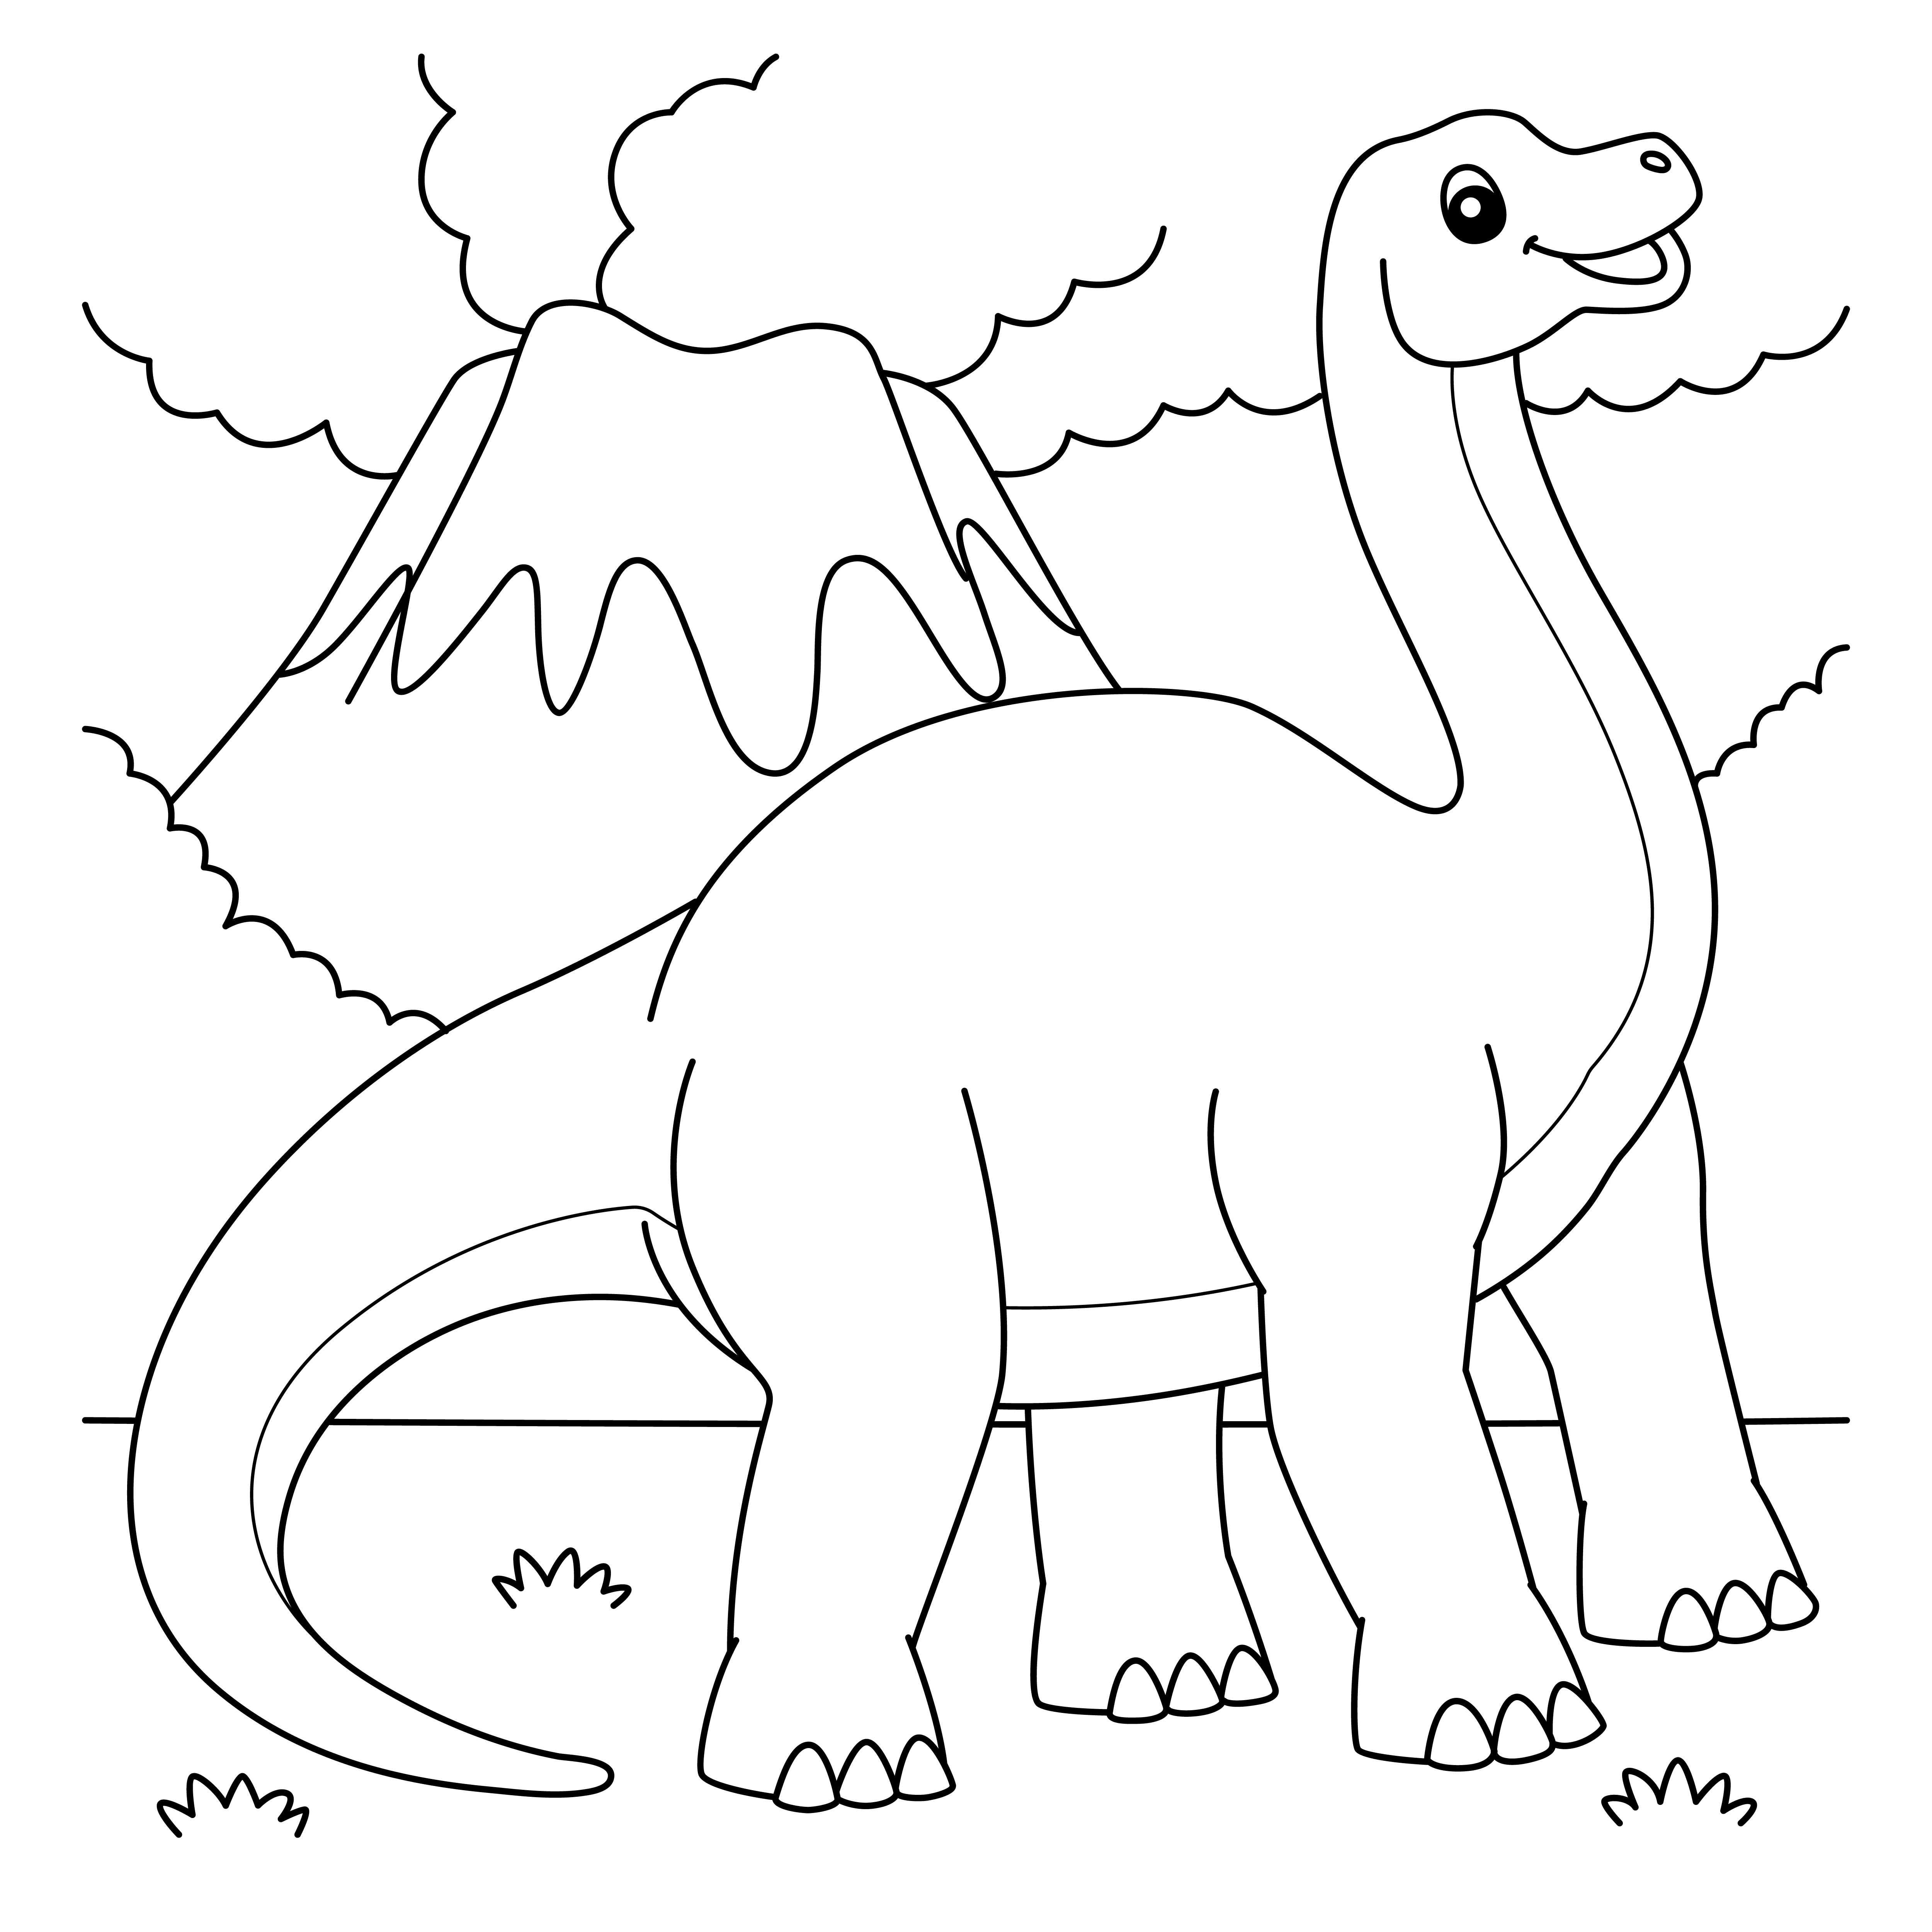 Раскраска бронтозавр на фоне гор и облаков формата А4 в высоком качестве